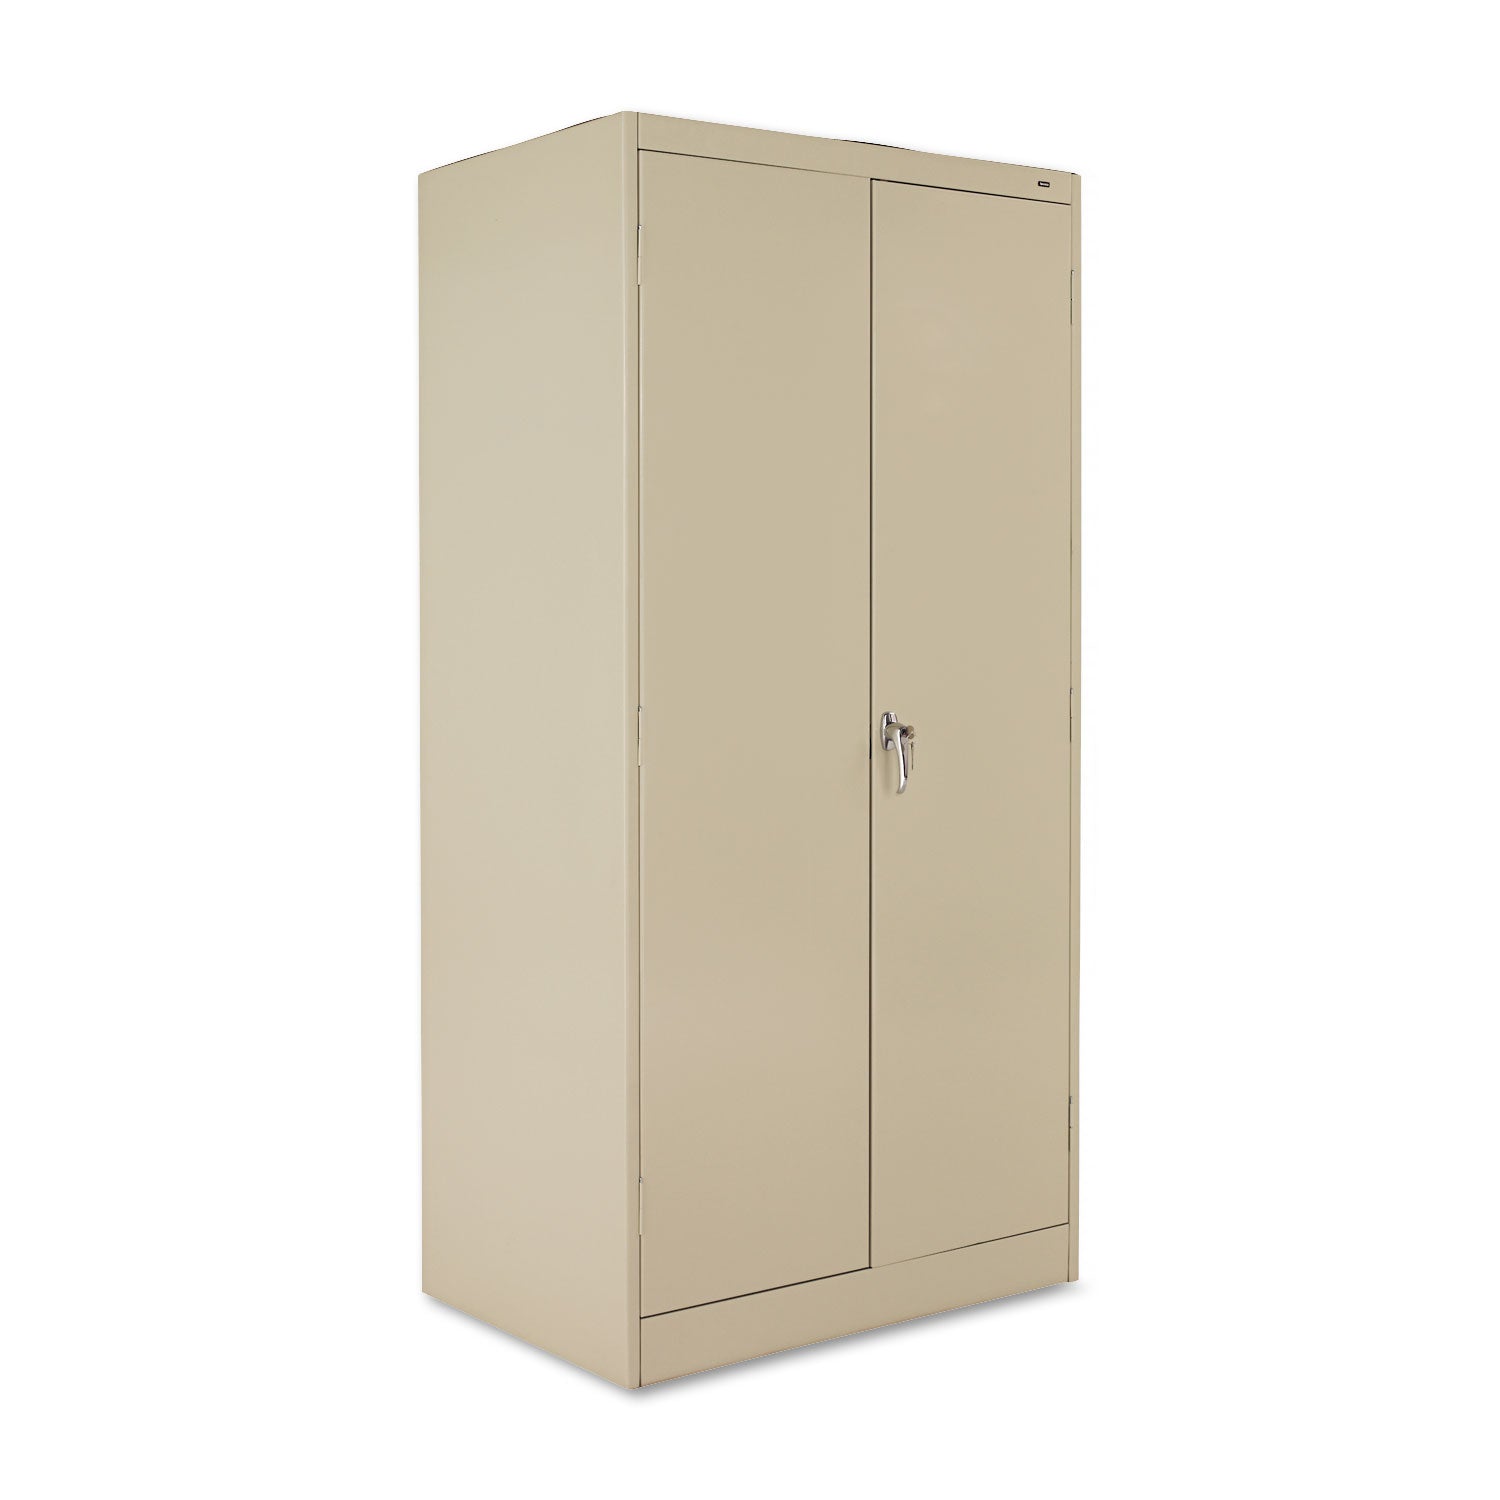 72" High Standard Cabinet (Unassembled), 36w x 24d x 72h, Putty - 